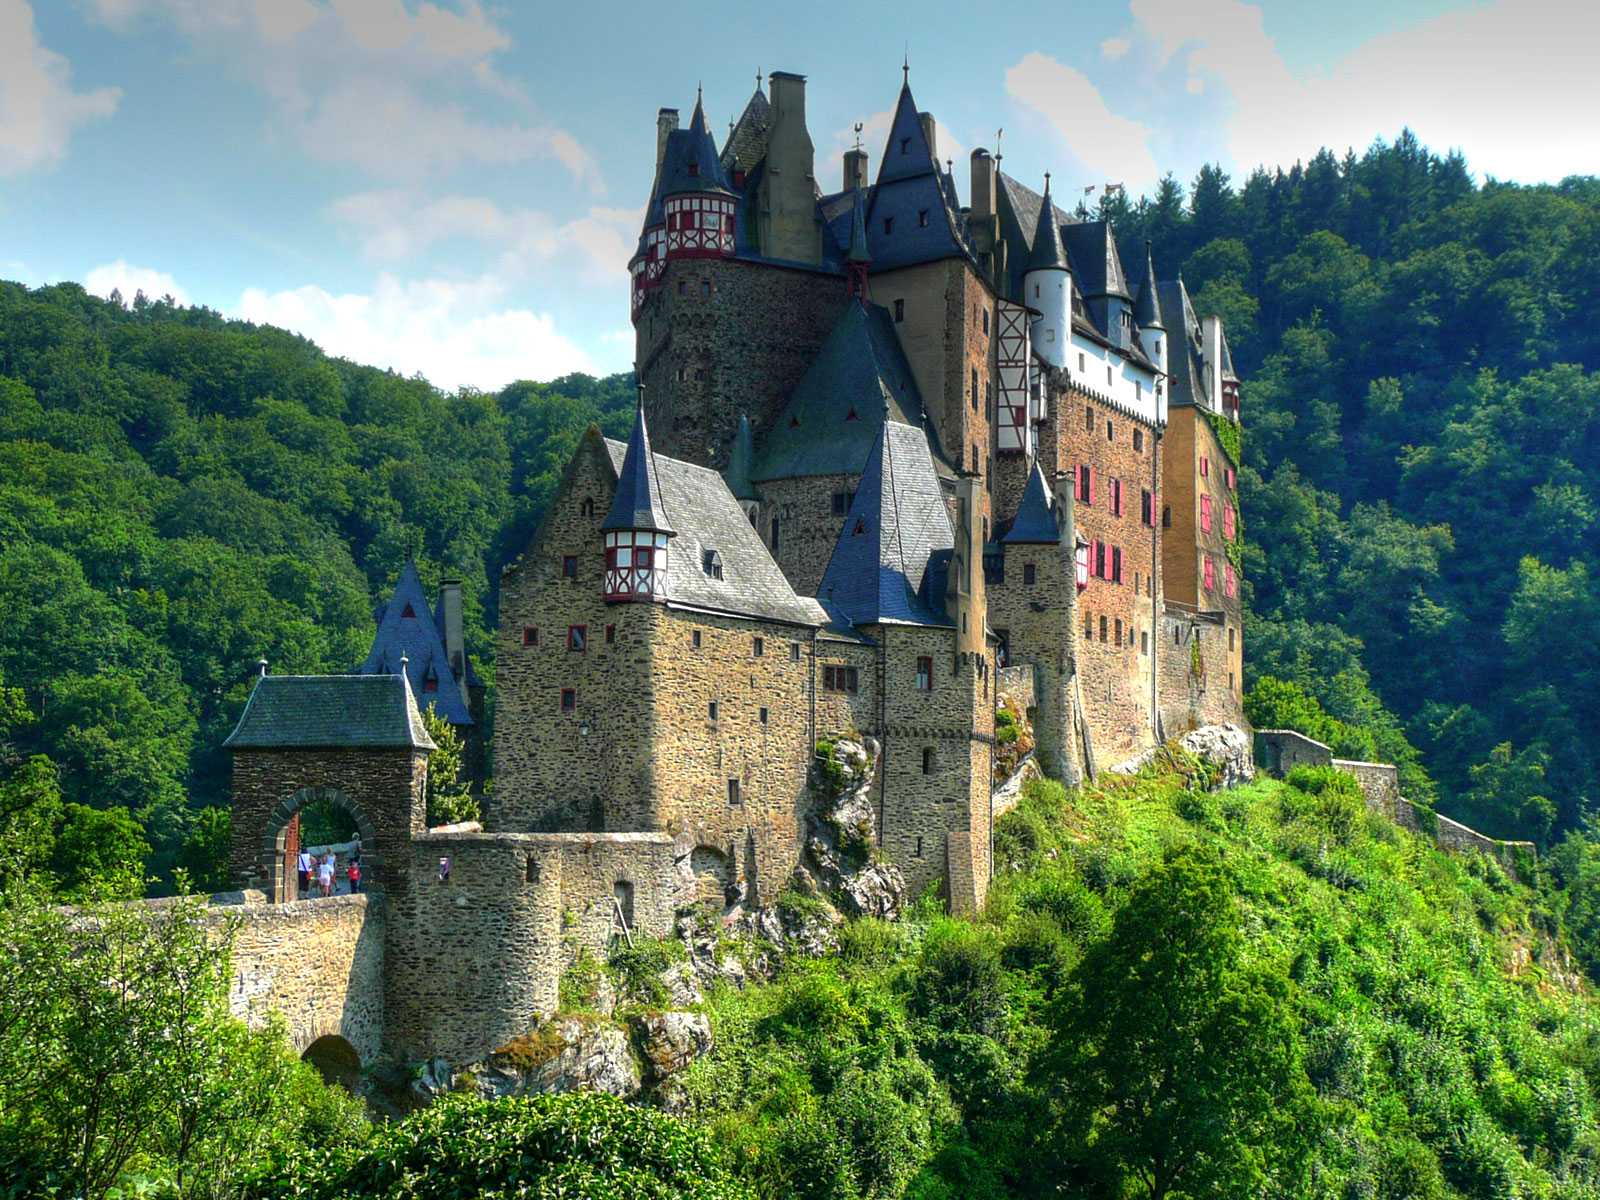 Le château médiéval d'Eltz niché dans les collines bordant la Moselle, en Allemagne